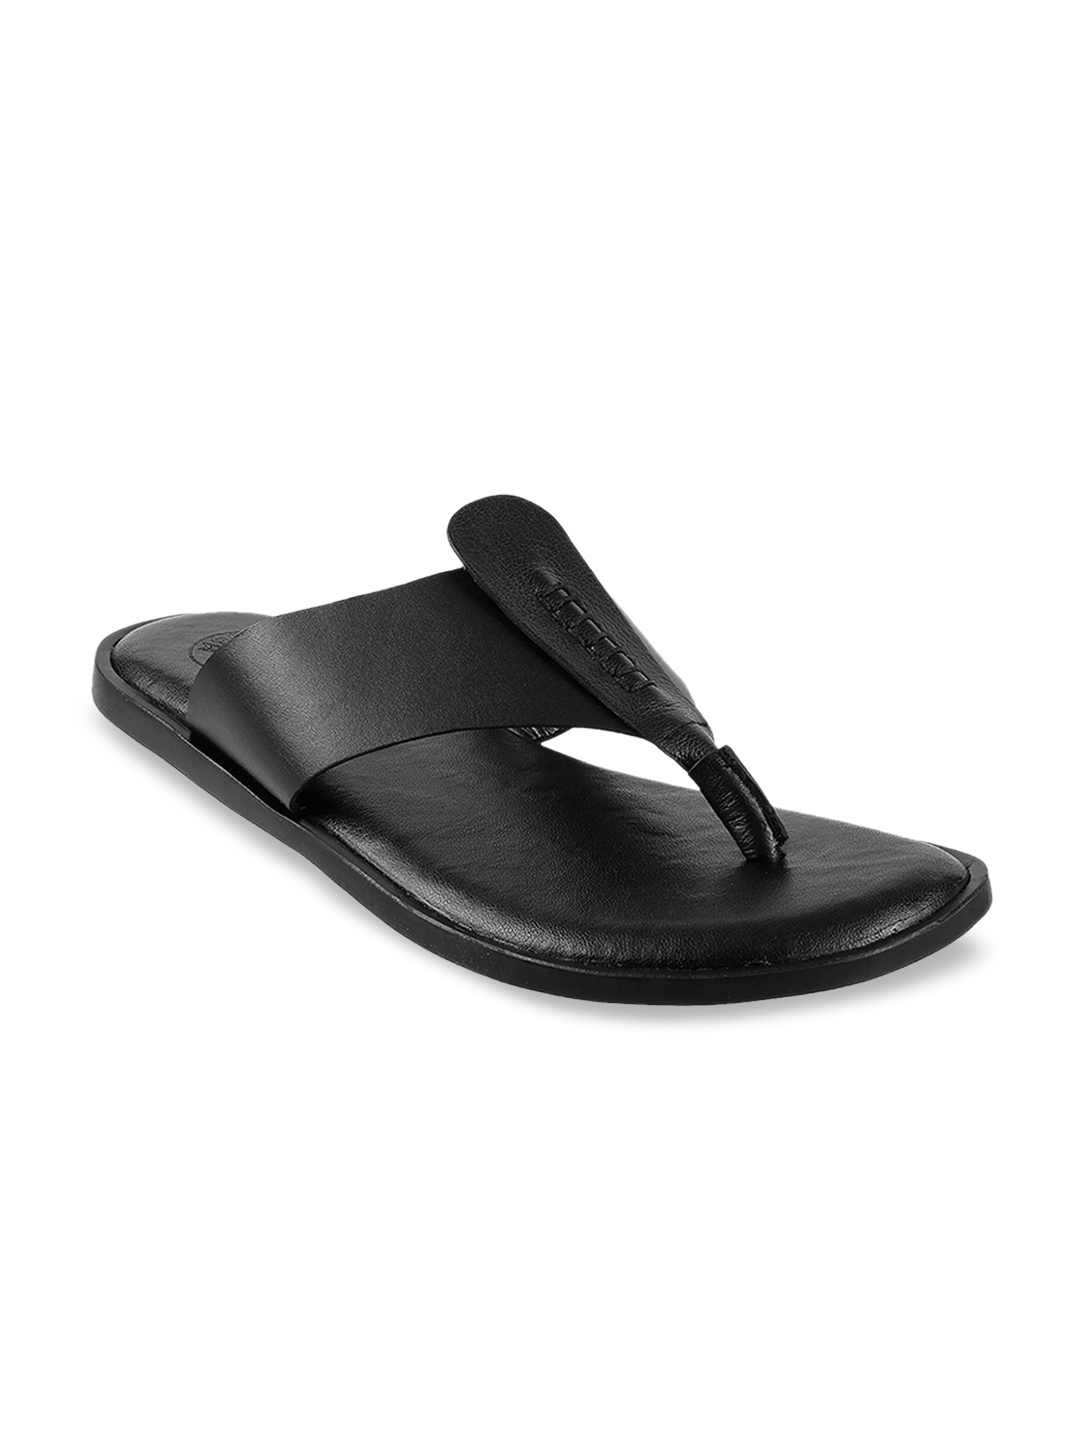 Buy Mochi Men Black Solid Leather Comfort Sandals - Sandals for Men ...